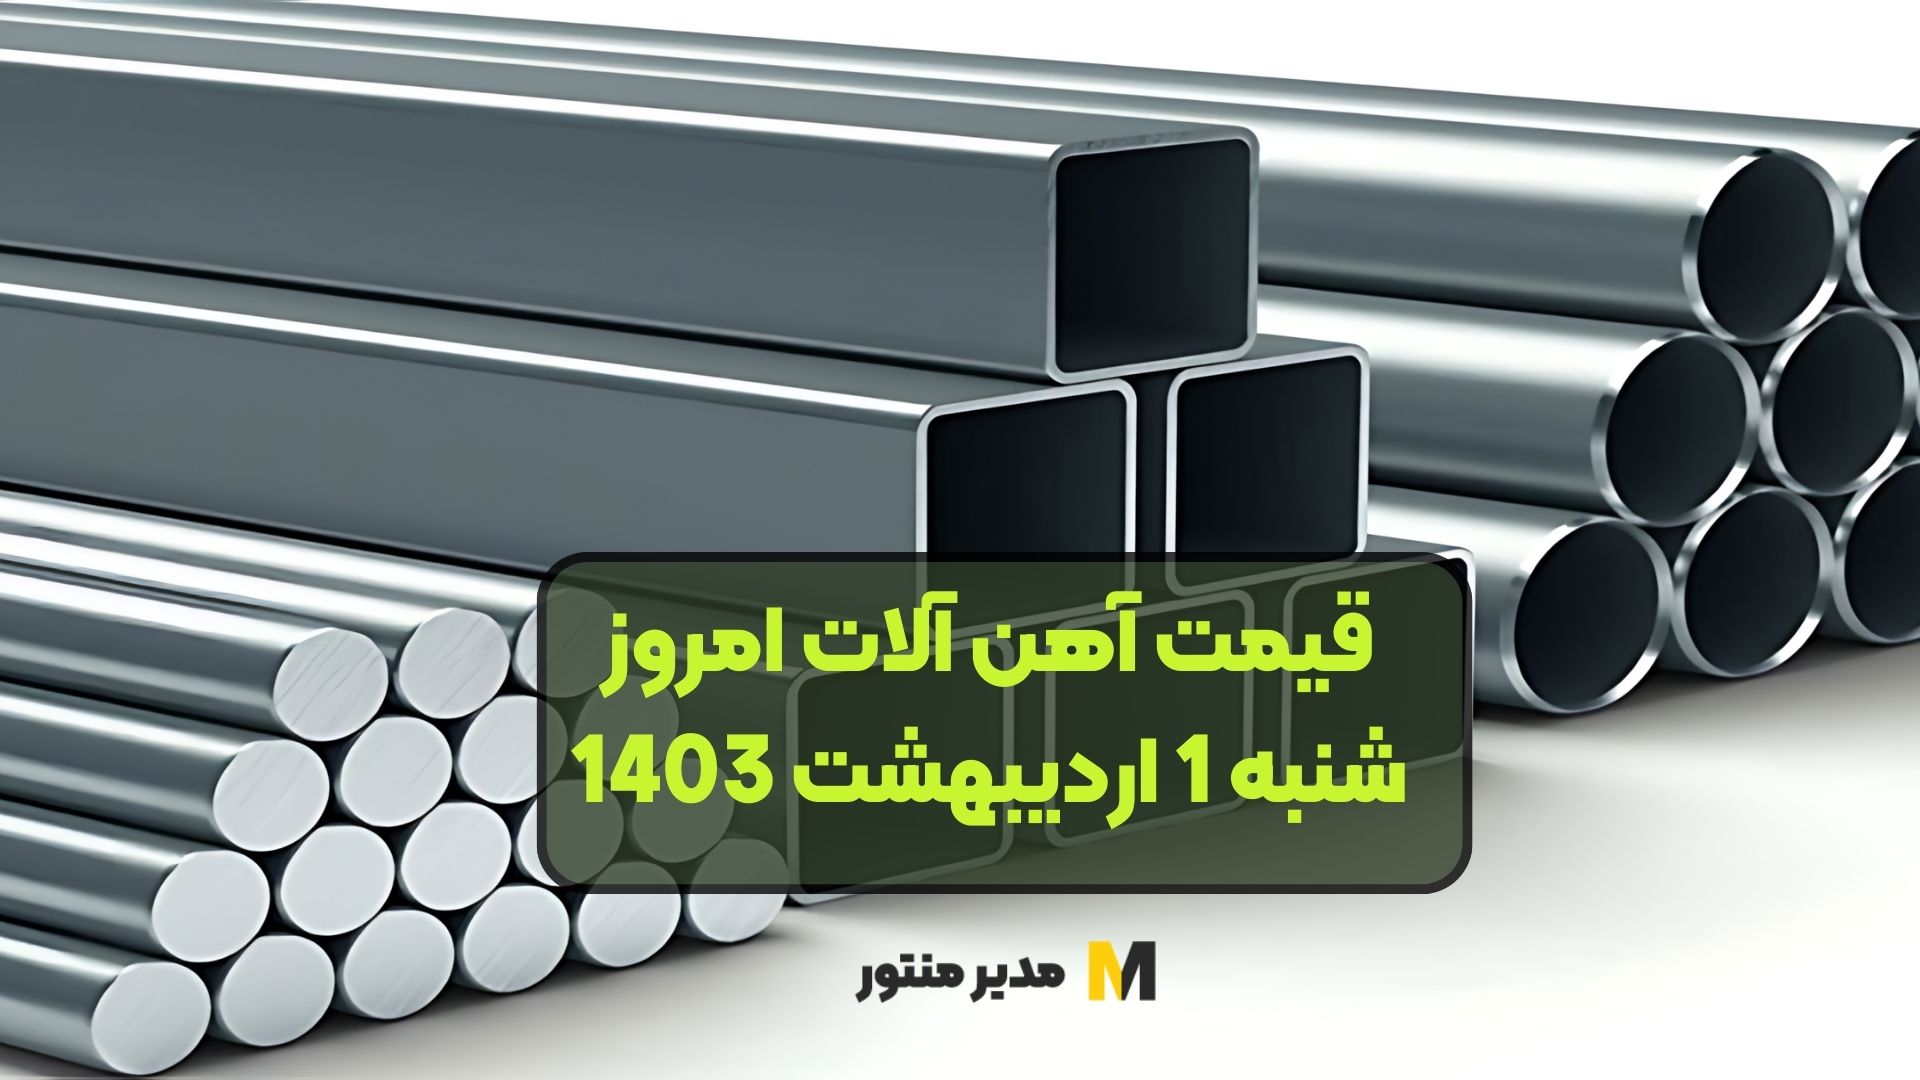 قیمت آهن آلات امروز شنبه 1 اردیبهشت 1403